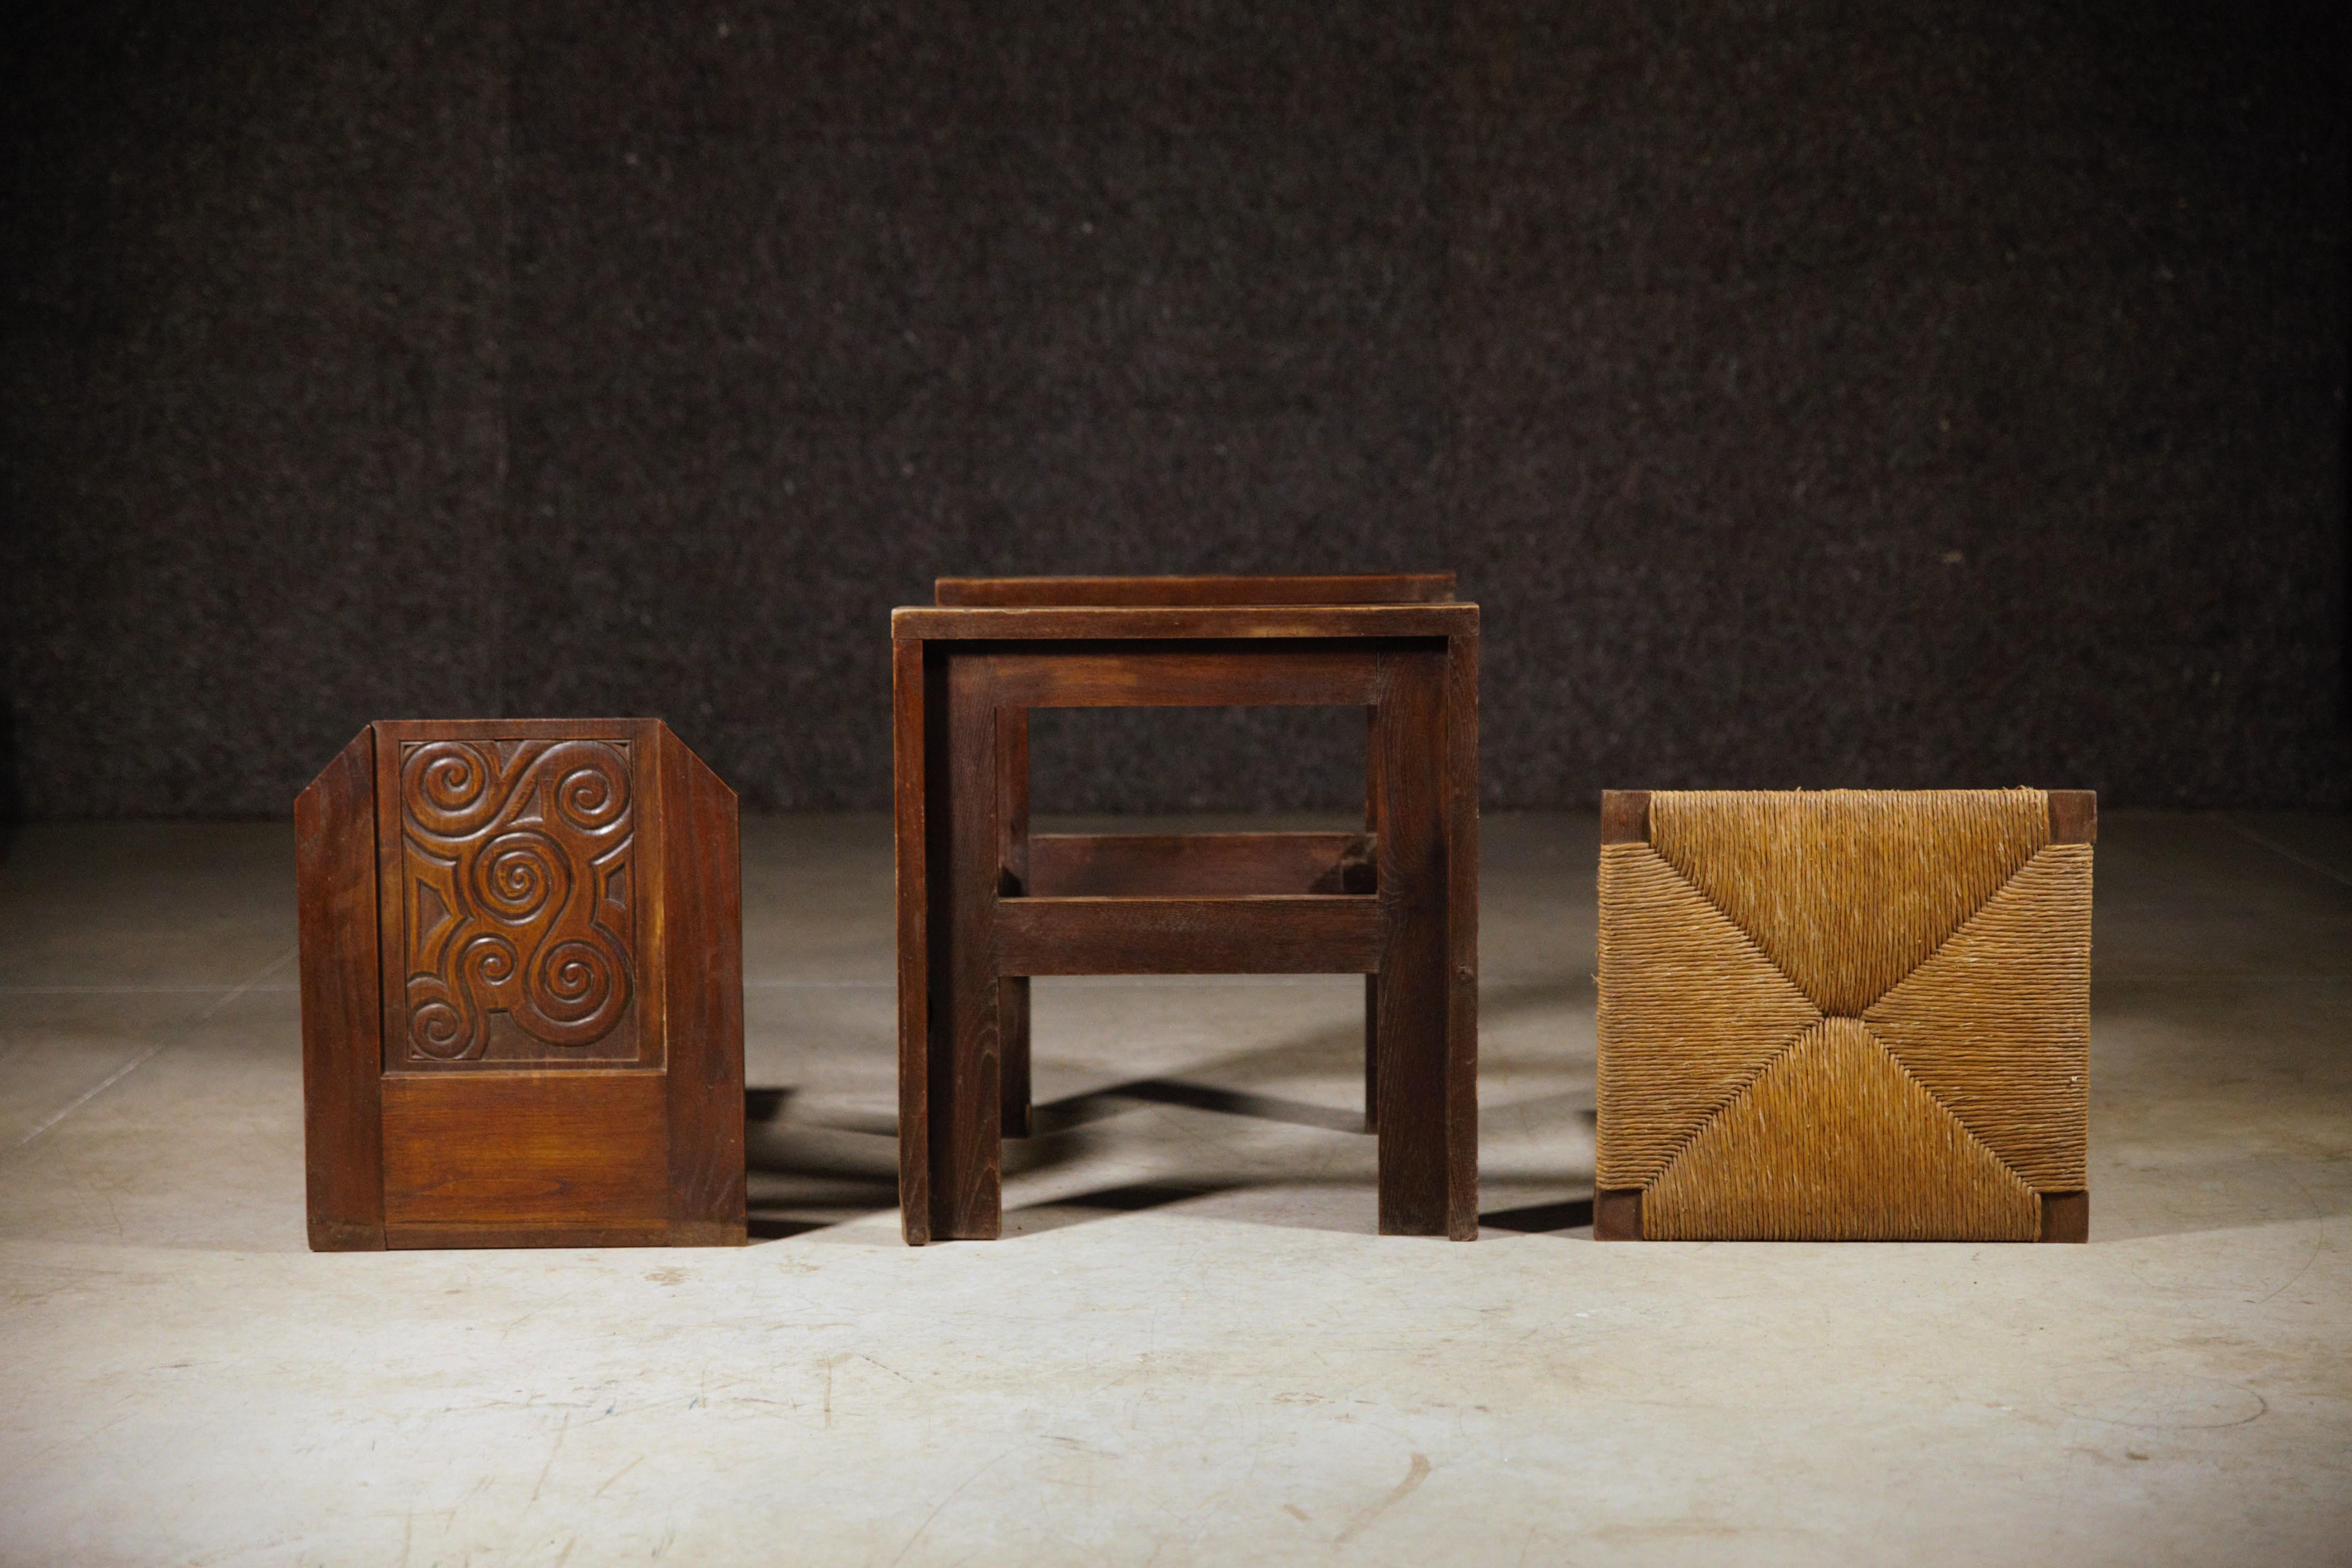 Rare paire de fauteuils celtiques de Joseph Savina.

Avec le dessin celtique antique.

Chêne sculpté et jonc d'origine.